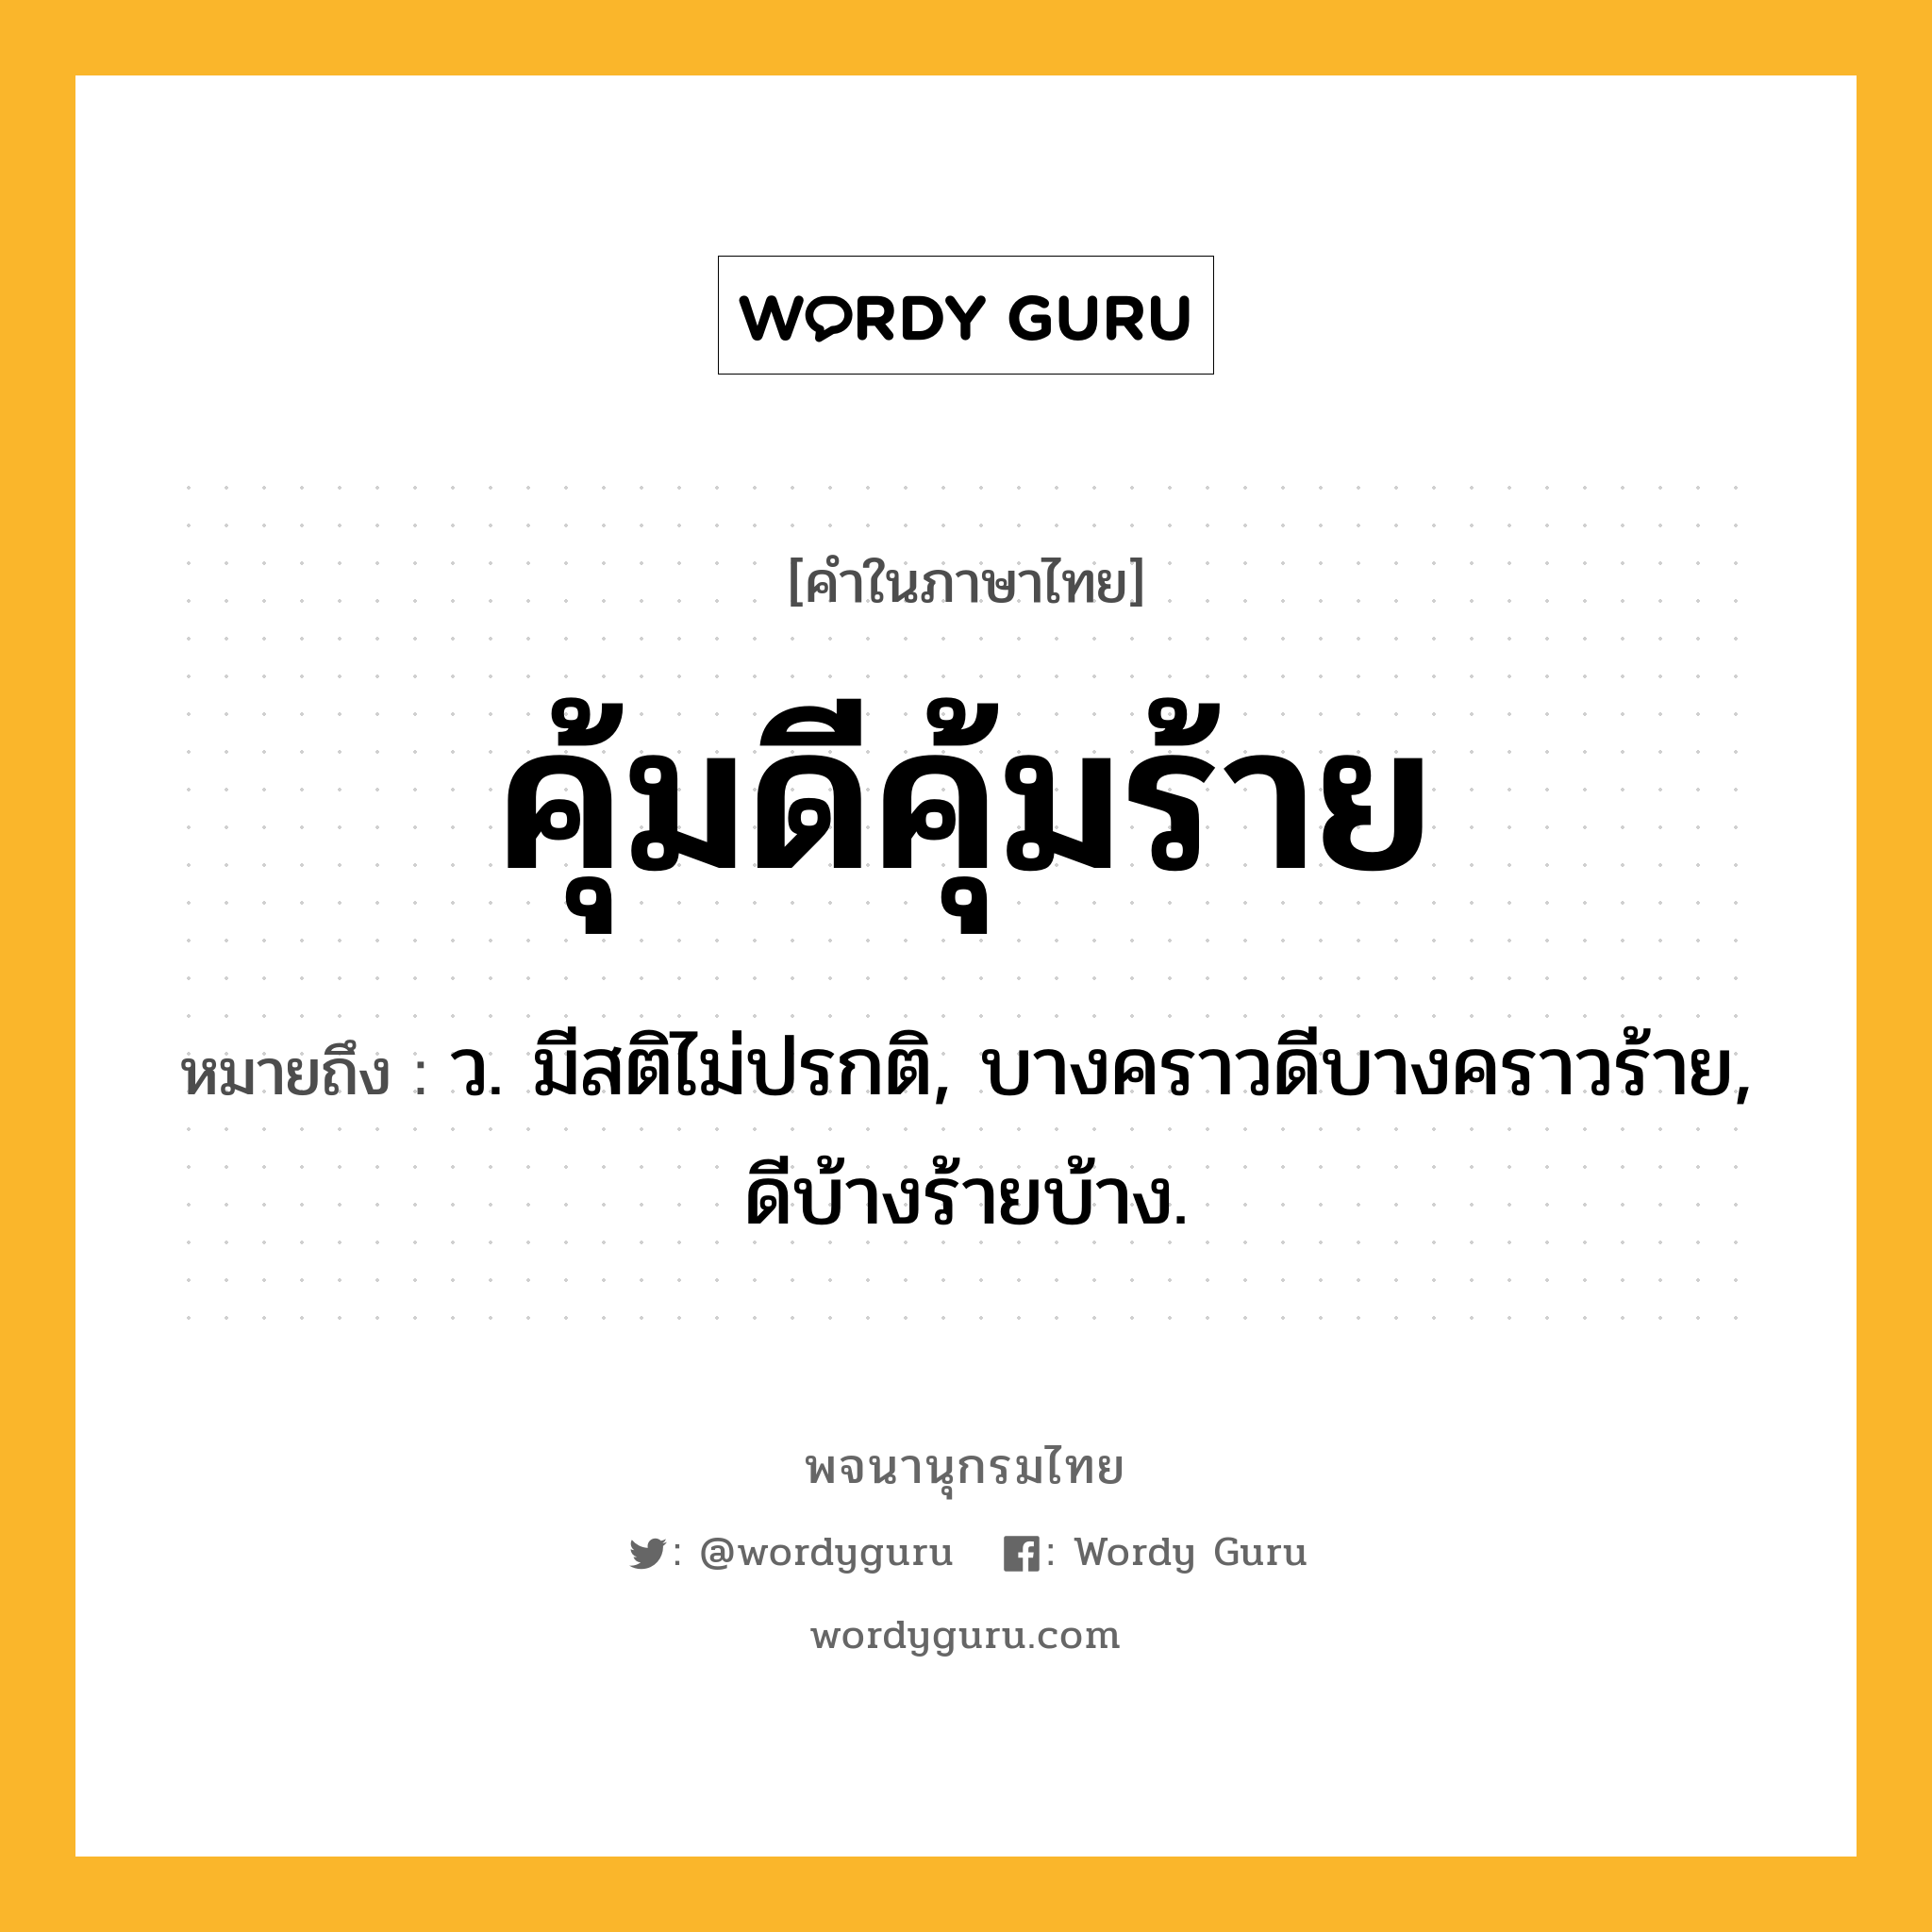 คุ้มดีคุ้มร้าย หมายถึงอะไร?, คำในภาษาไทย คุ้มดีคุ้มร้าย หมายถึง ว. มีสติไม่ปรกติ, บางคราวดีบางคราวร้าย, ดีบ้างร้ายบ้าง.